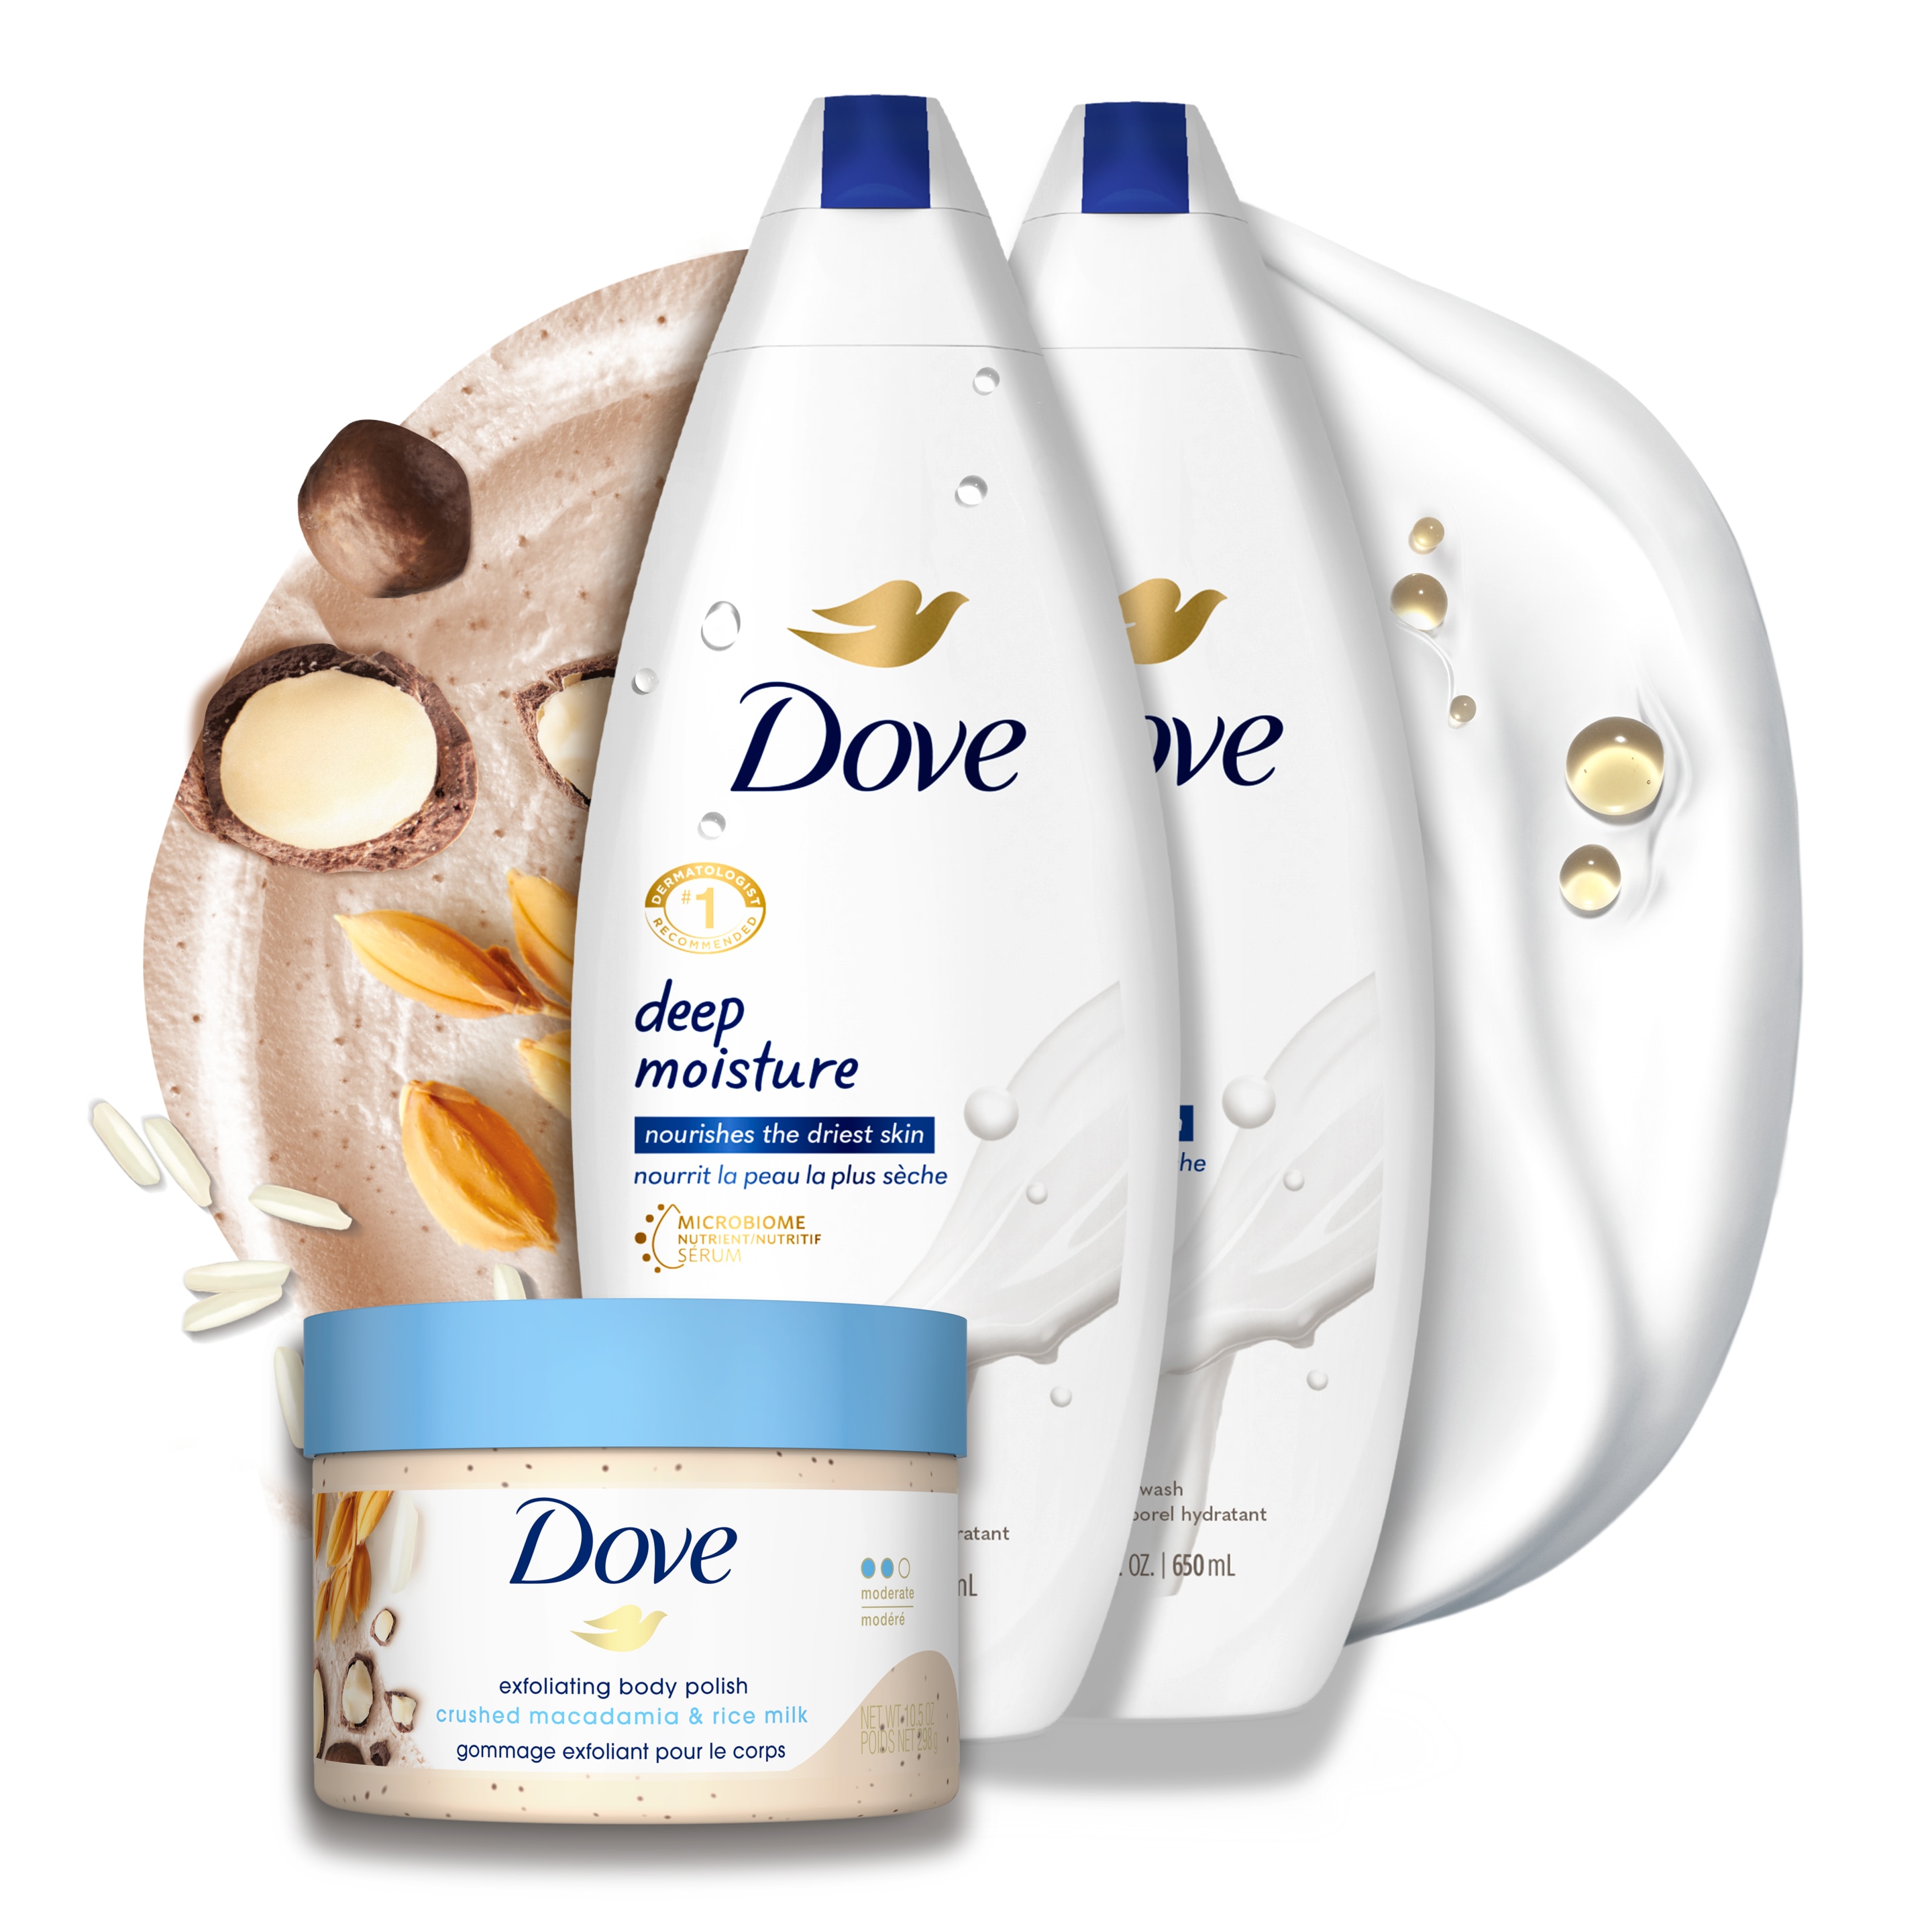 Dove Deep Moisture Body Wash and Crushed Macadamia & Rice Milk Body Polish